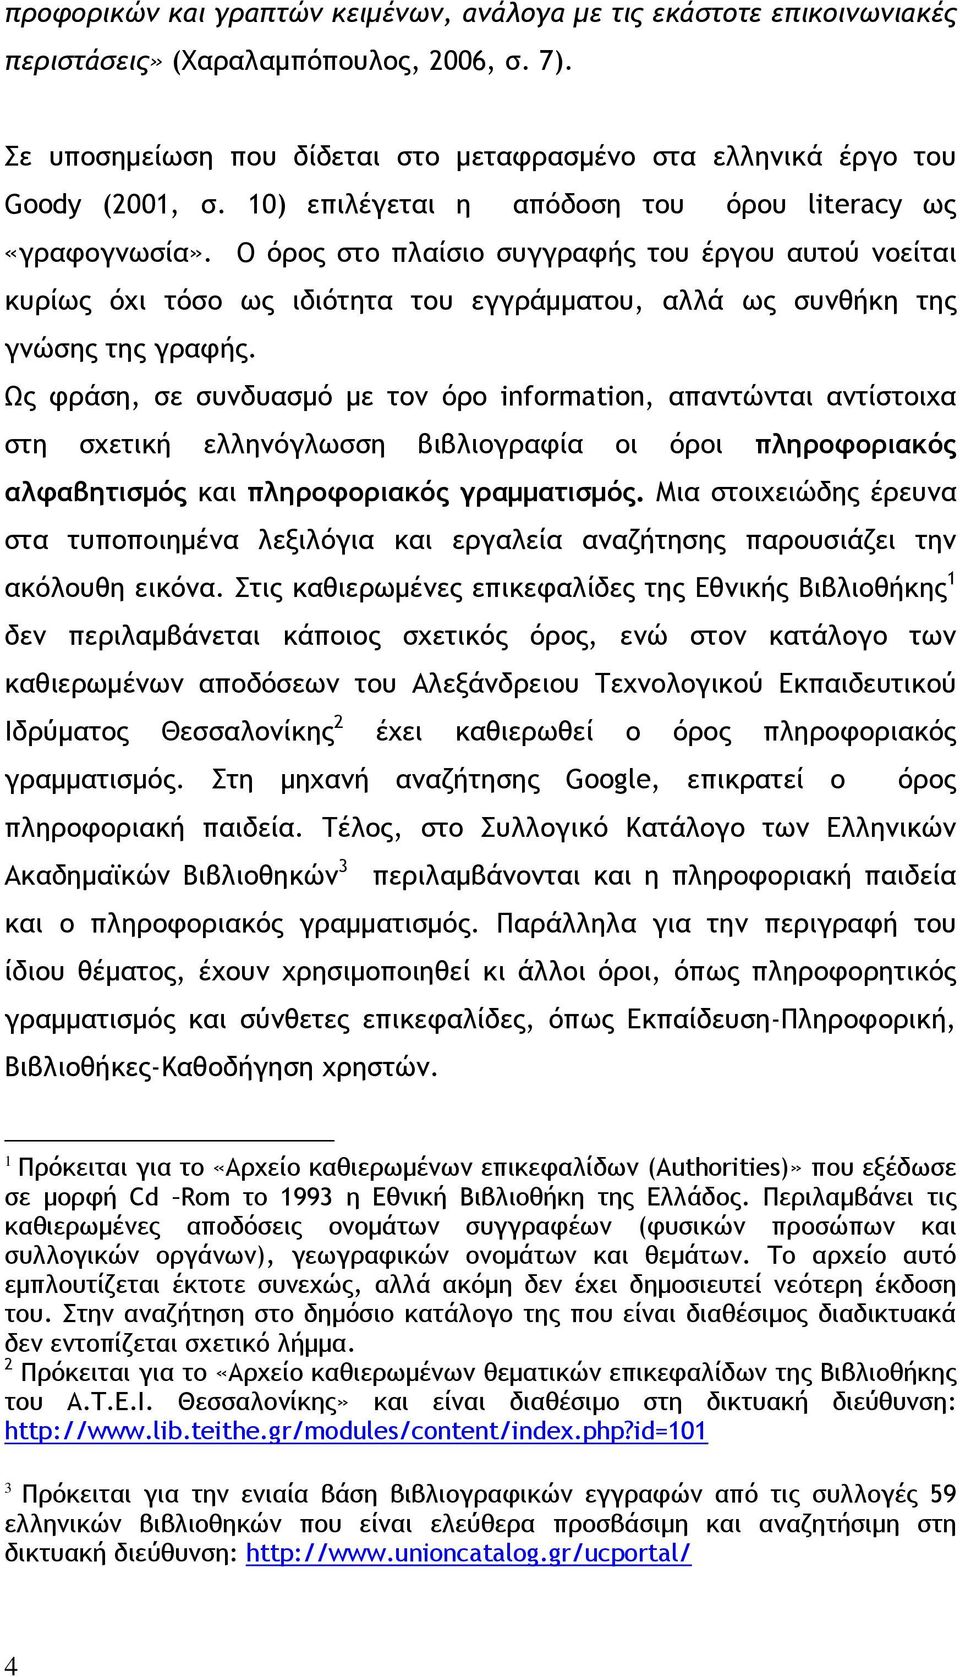 Ως φράση, σε συνδυασμό με τον όρο information, απαντώνται αντίστοιχα στη σχετική ελληνόγλωσση βιβλιογραφία οι όροι πληροφοριακός αλφαβητισμός και πληροφοριακός γραμματισμός.